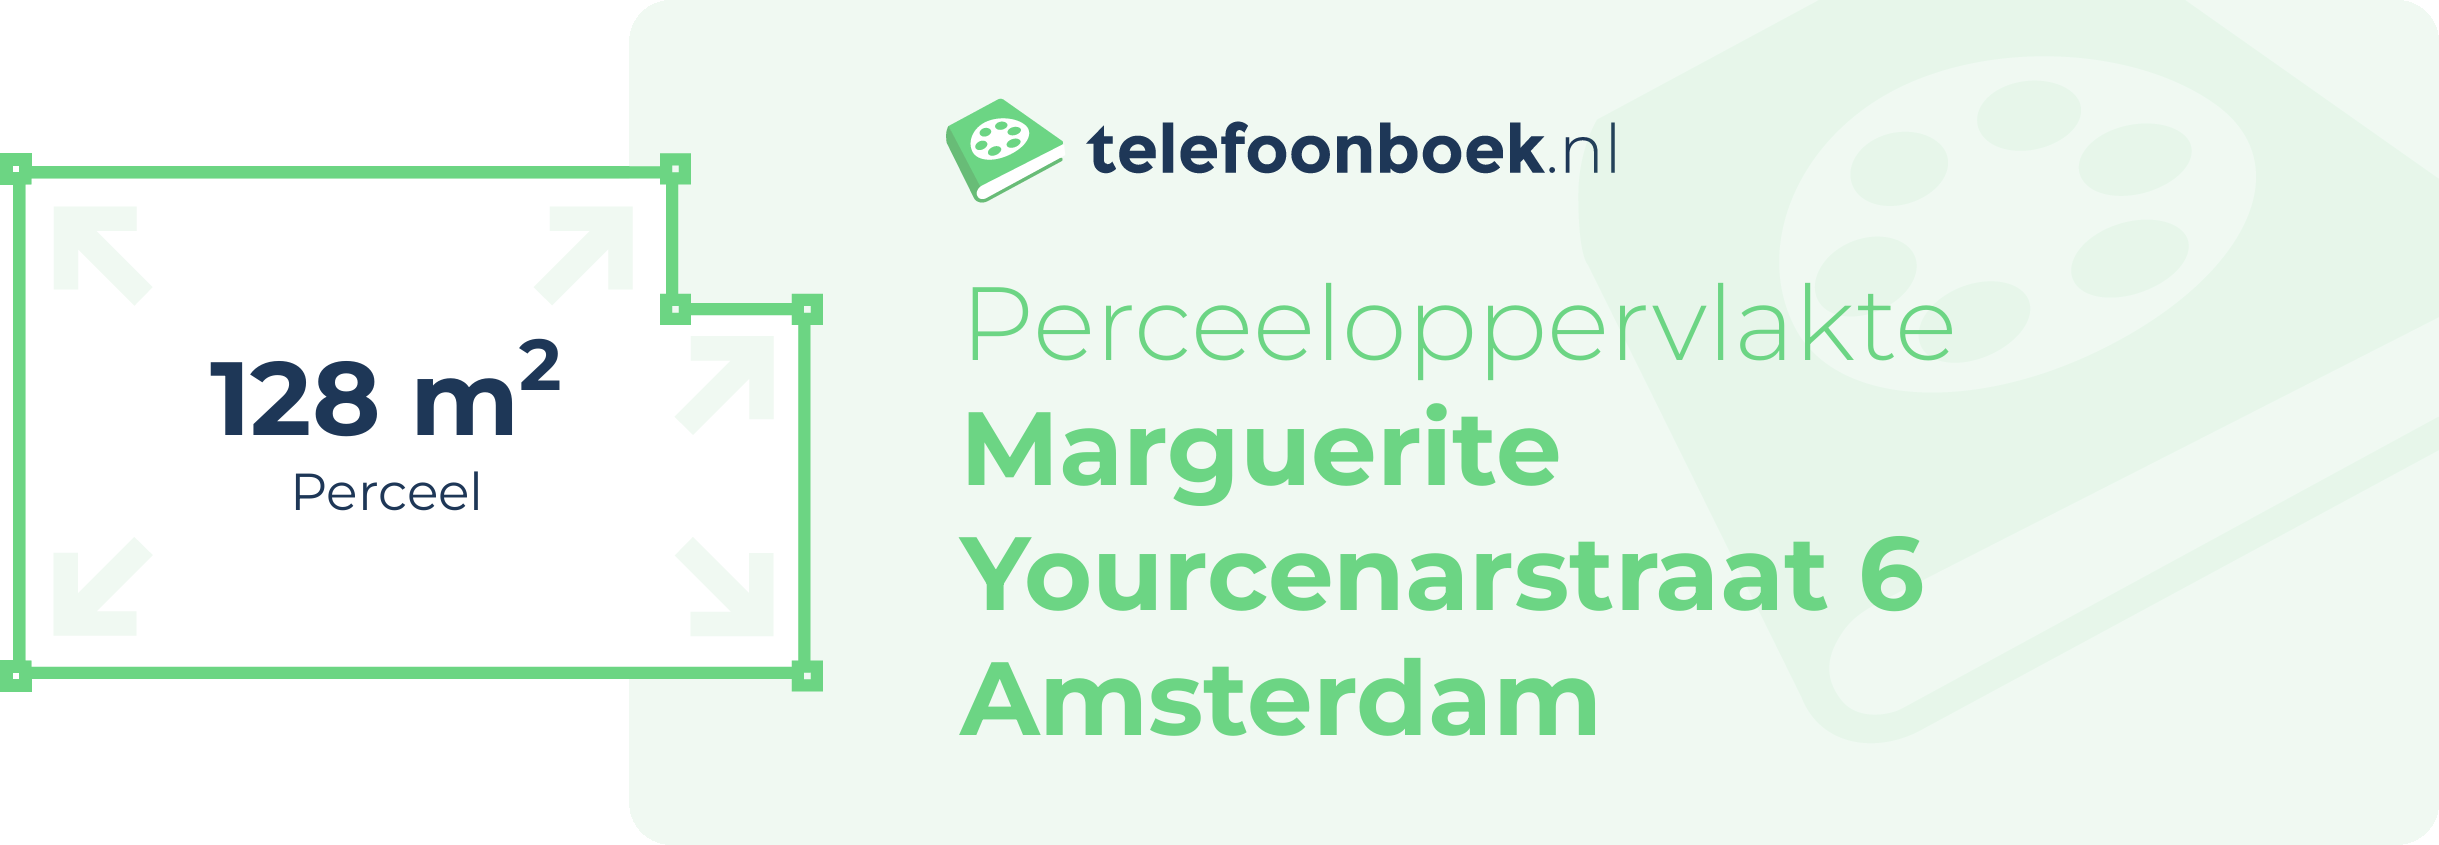 Perceeloppervlakte Marguerite Yourcenarstraat 6 Amsterdam